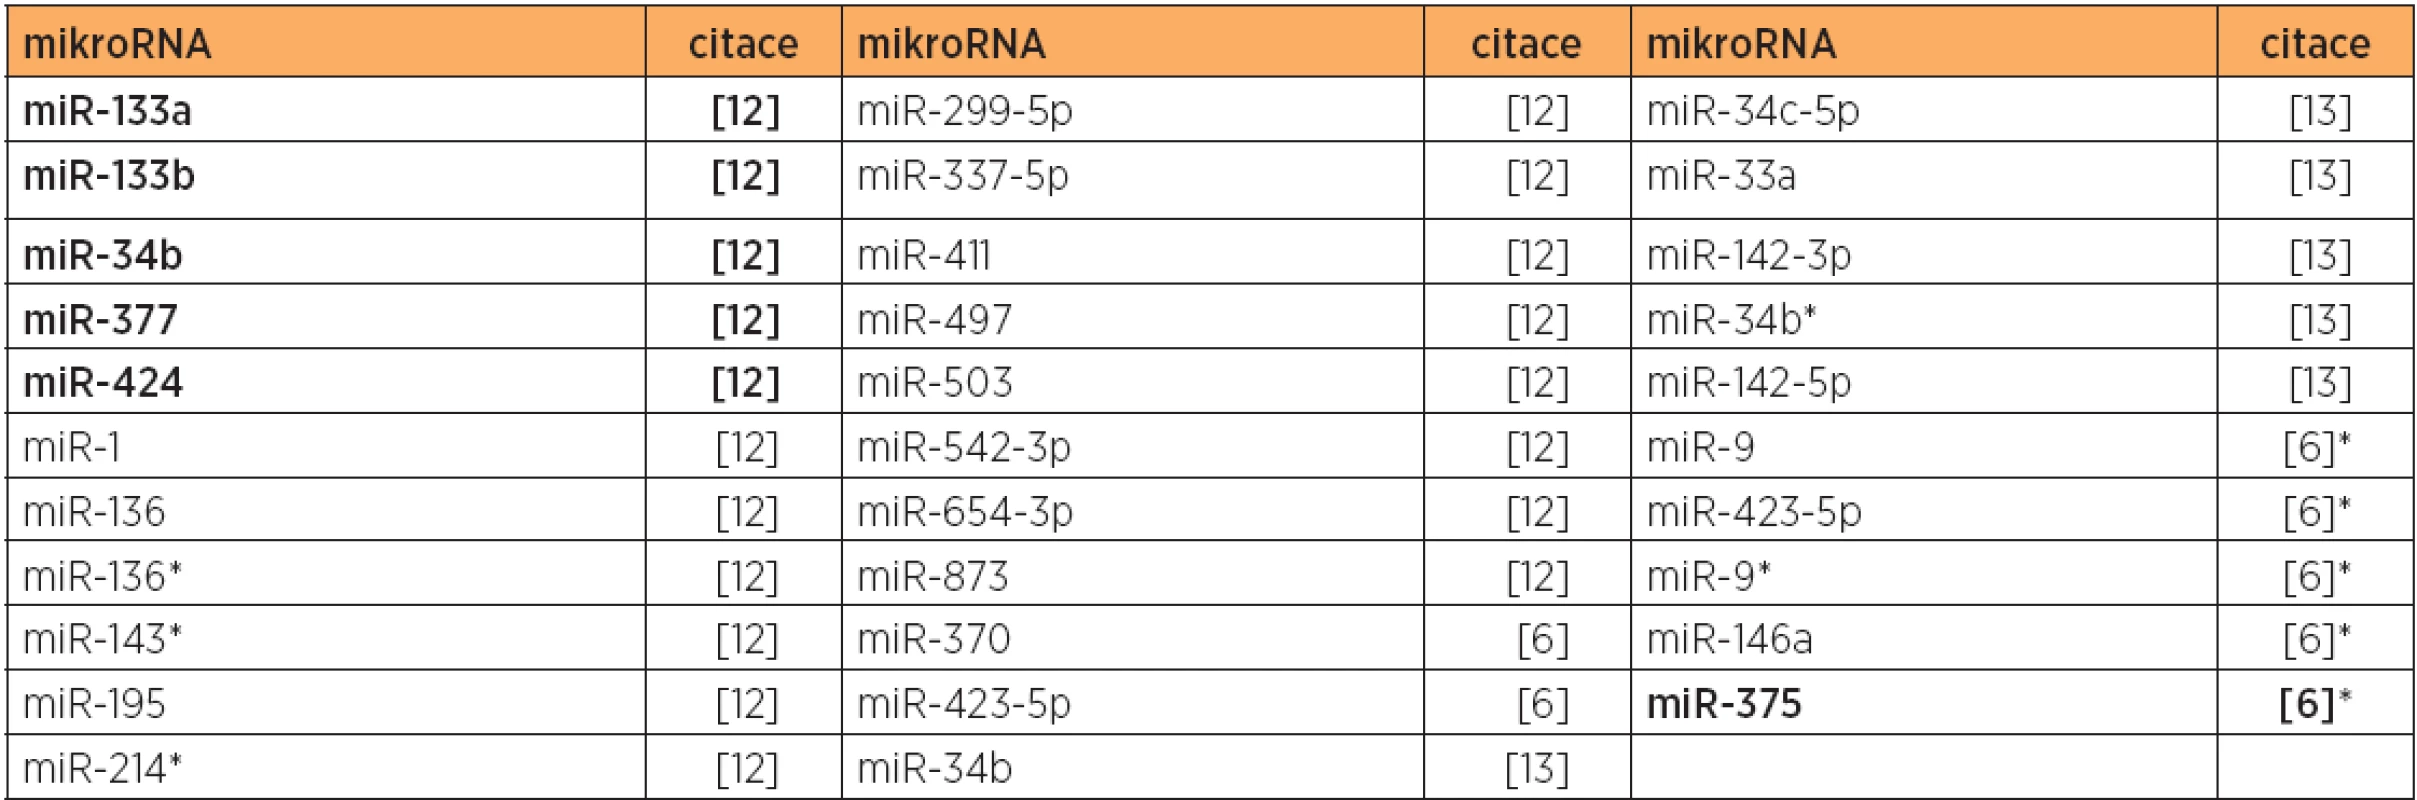 Snížená exprese mikroRNA u typu 2 versus normální endometrium, případně versus typ 1 (citace [6]*)